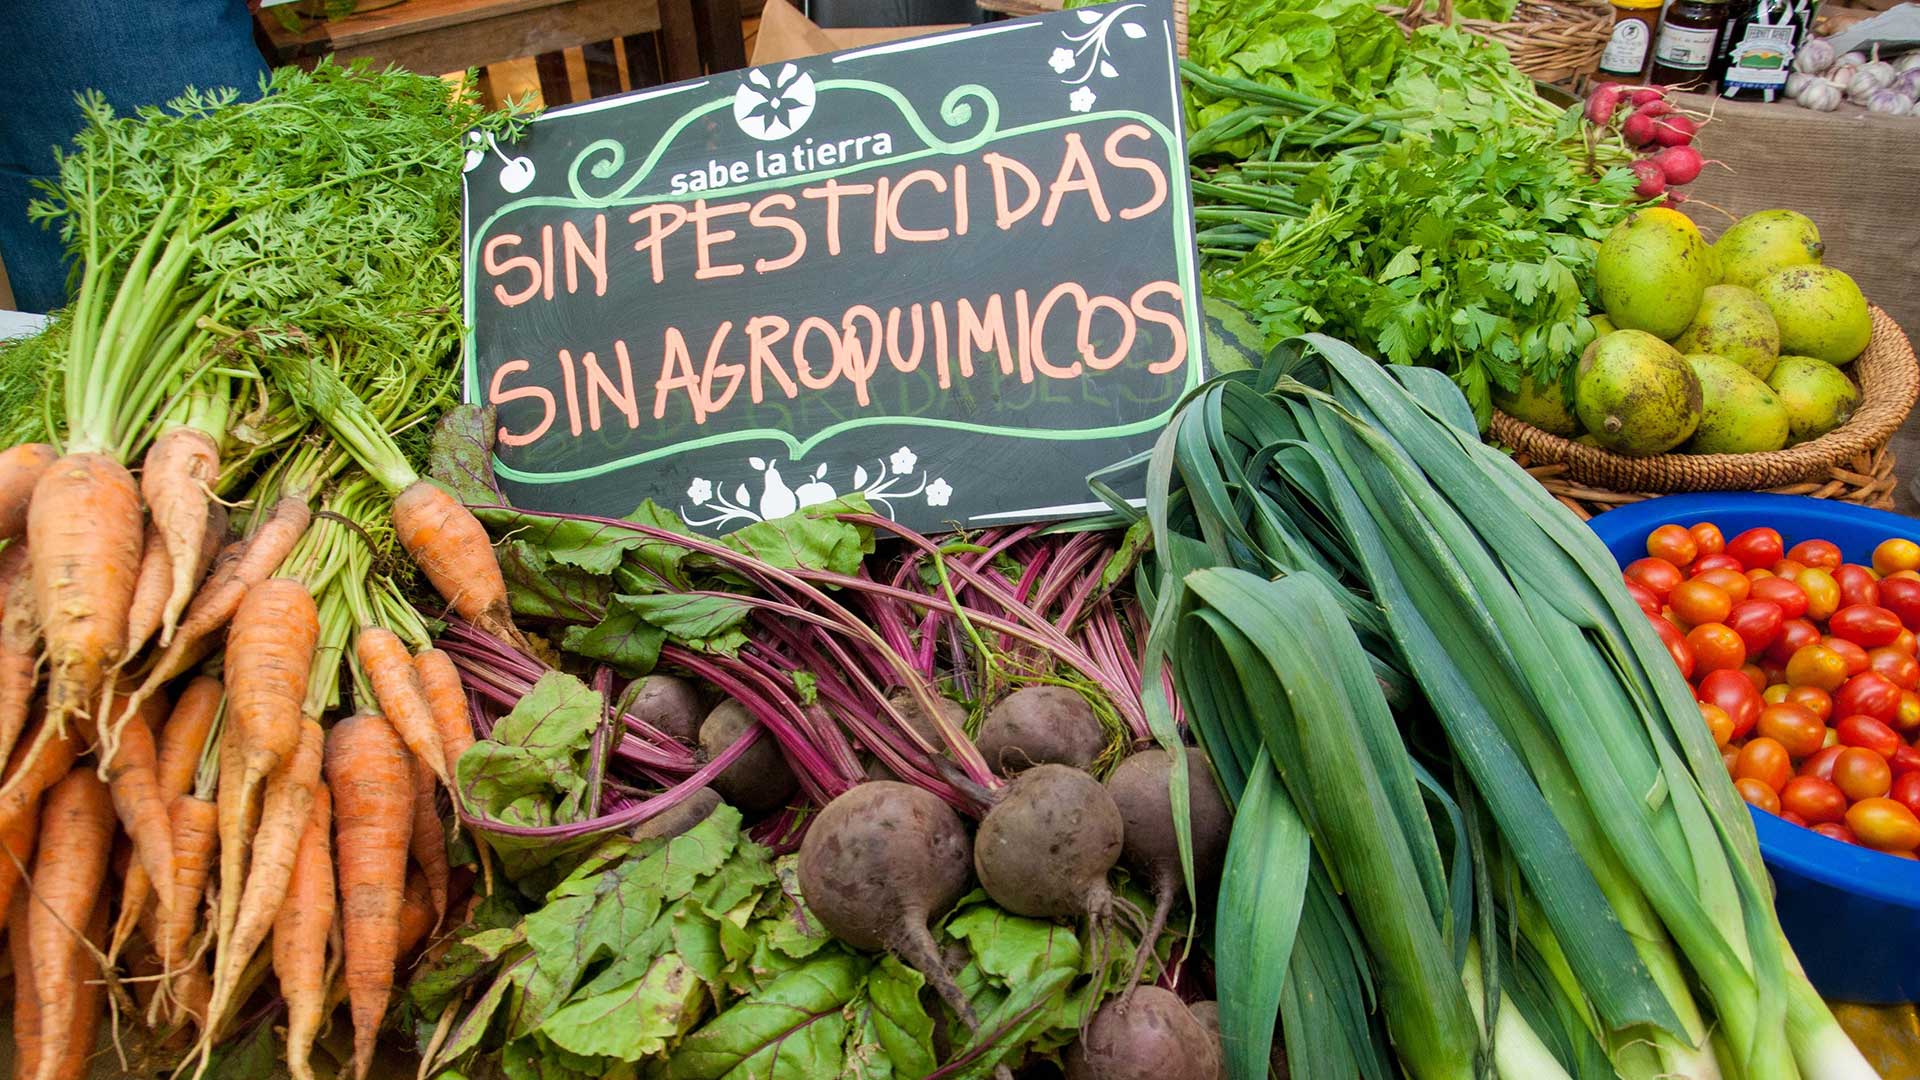 <p>Uma placa em um mercado em Buenos Aires indica que os vegetais foram produzidos sem pesticidas e agroquímicos (imagem: Fermín Koop)</p>